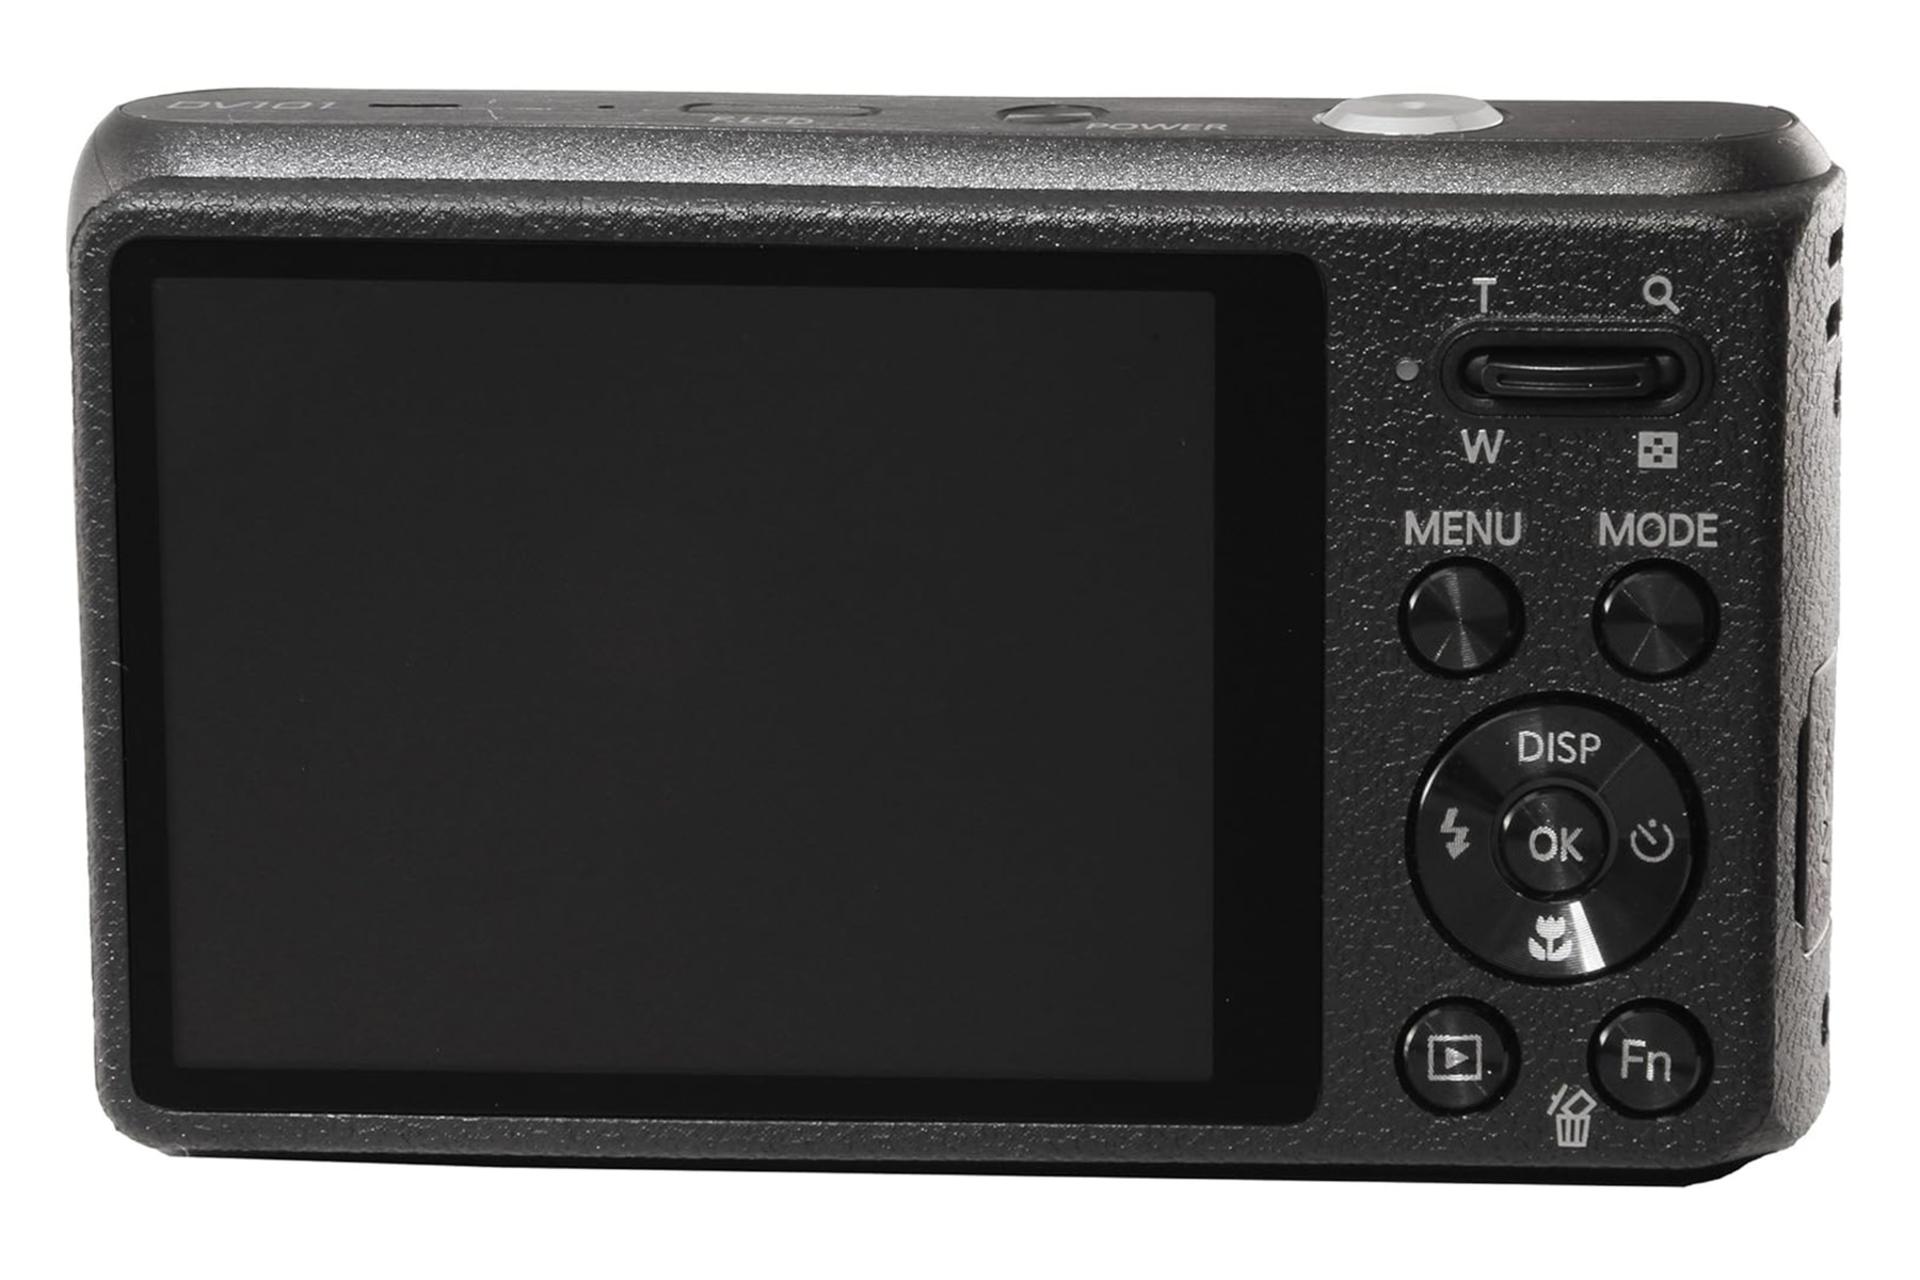 دوربین سامسونگ Samsung DV101 نمای پشت و نمایشگر LCD